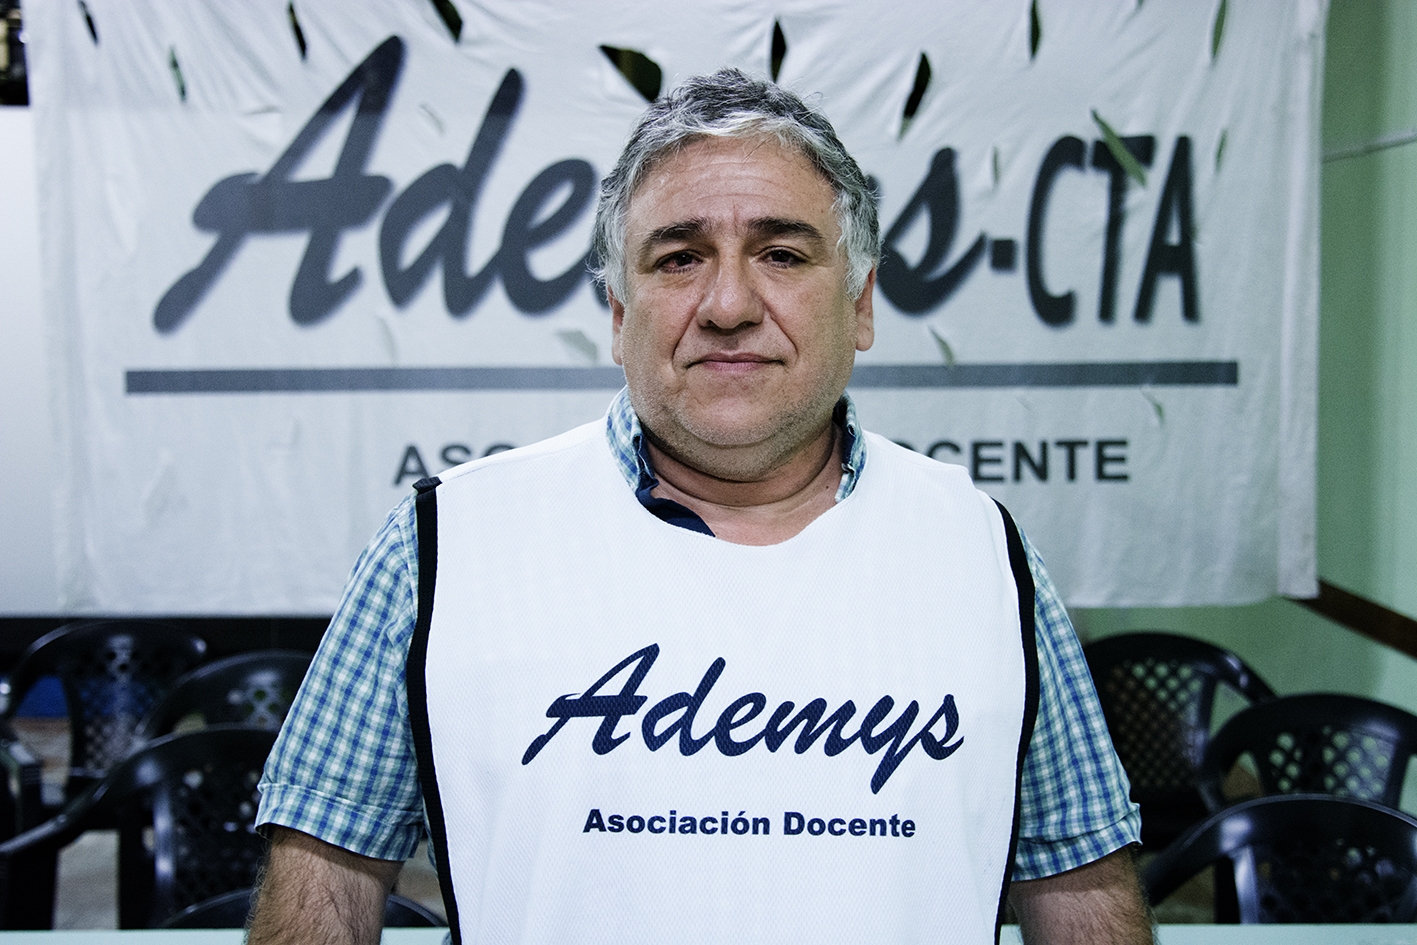 Jorge Adaro, Sec. Gral. De Ademys, Explicó Por Qué Rechazan El “Operativo Aprender”